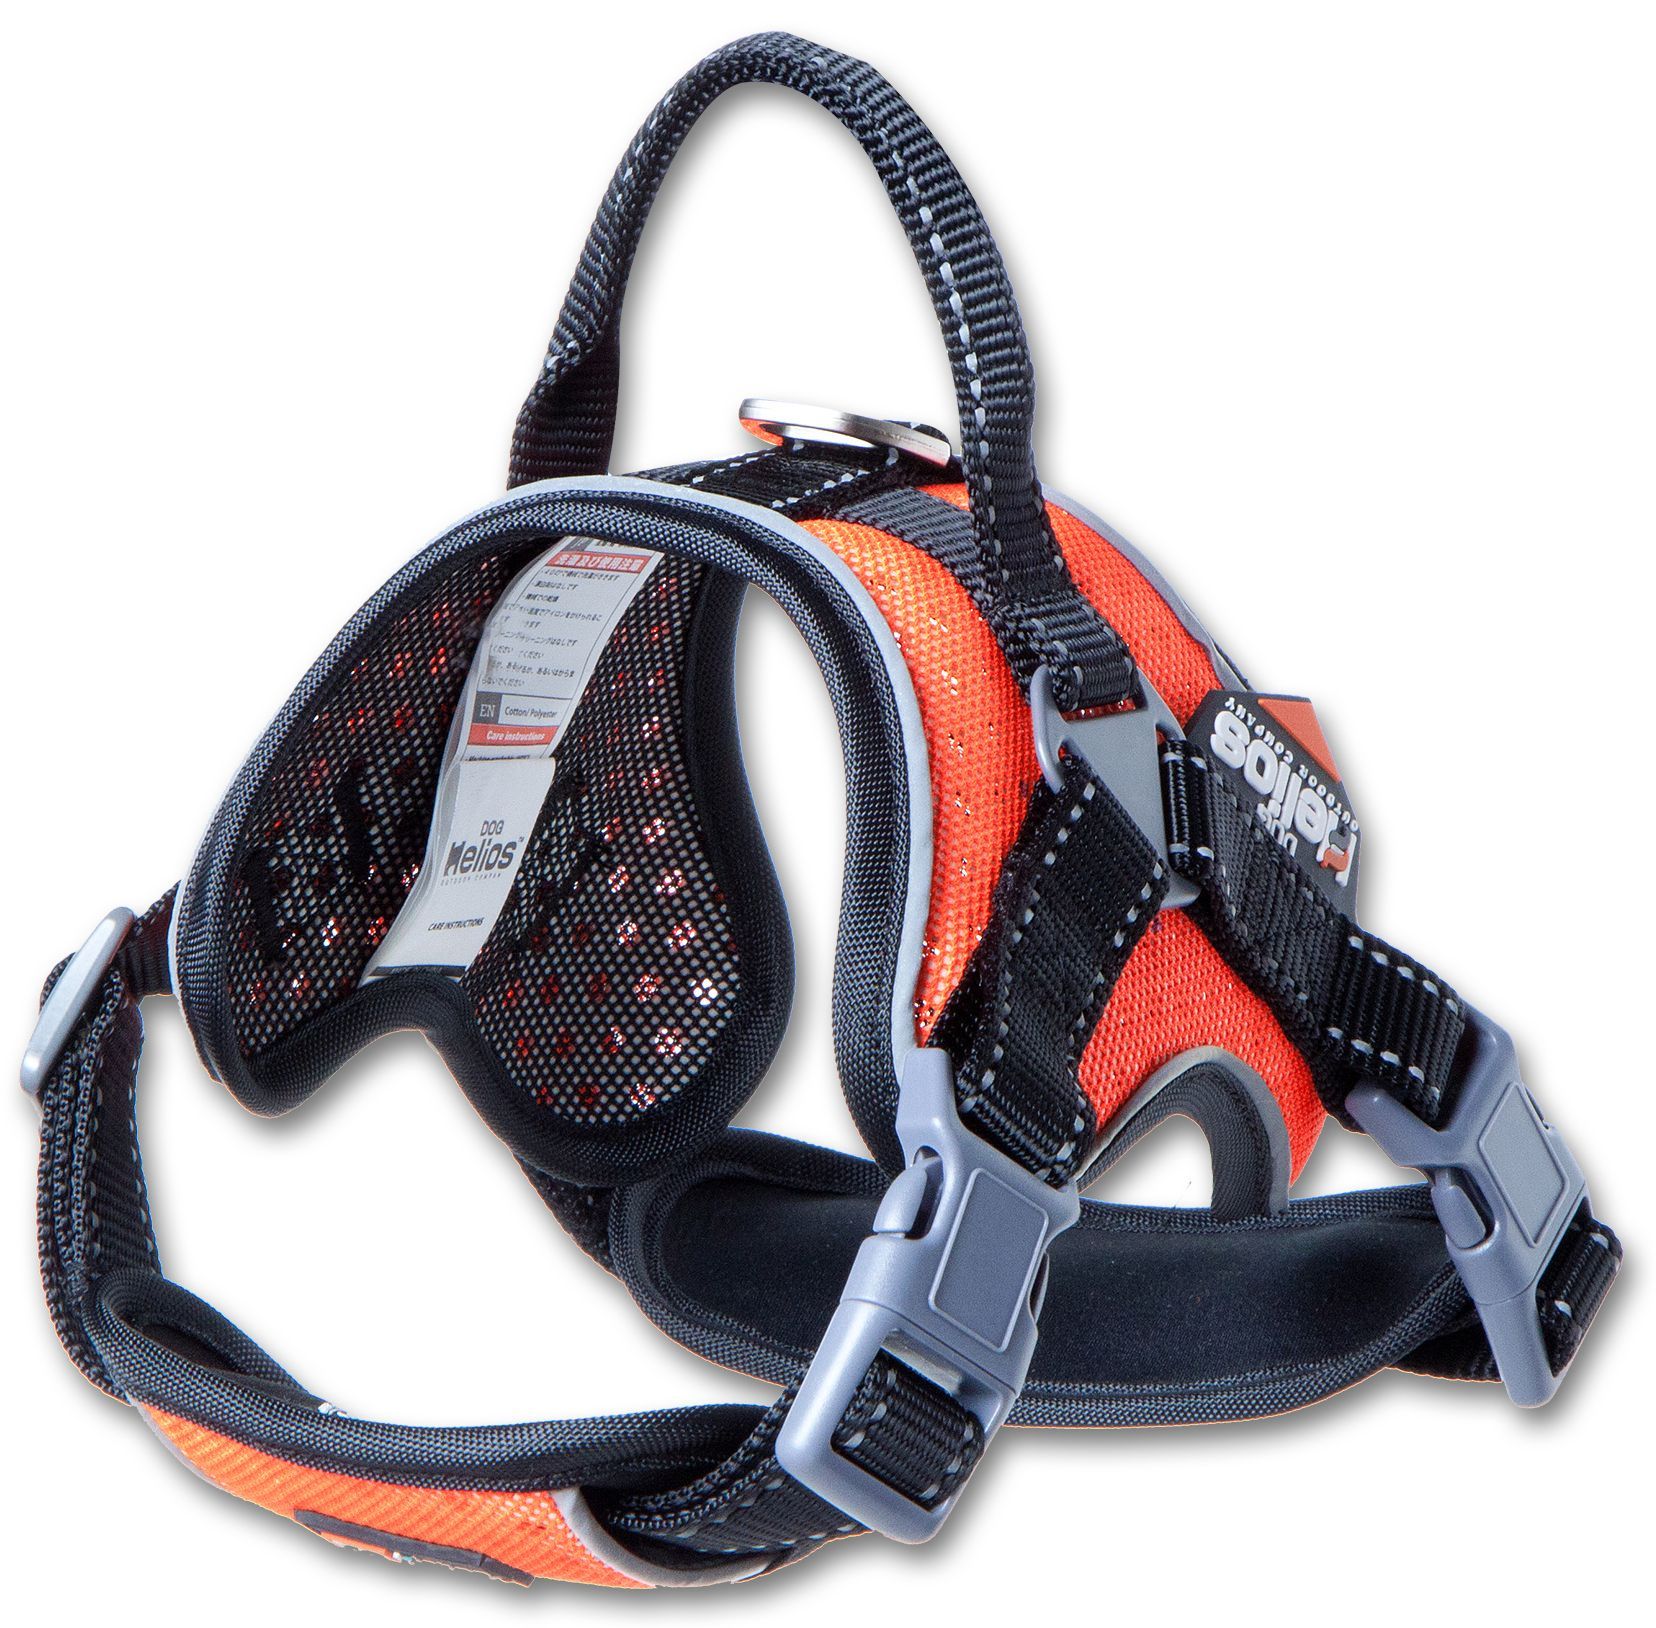 Dog Helios  'Scorpion' Sporty High-Performance Free-Range Dog Harness - orange - Size: Large